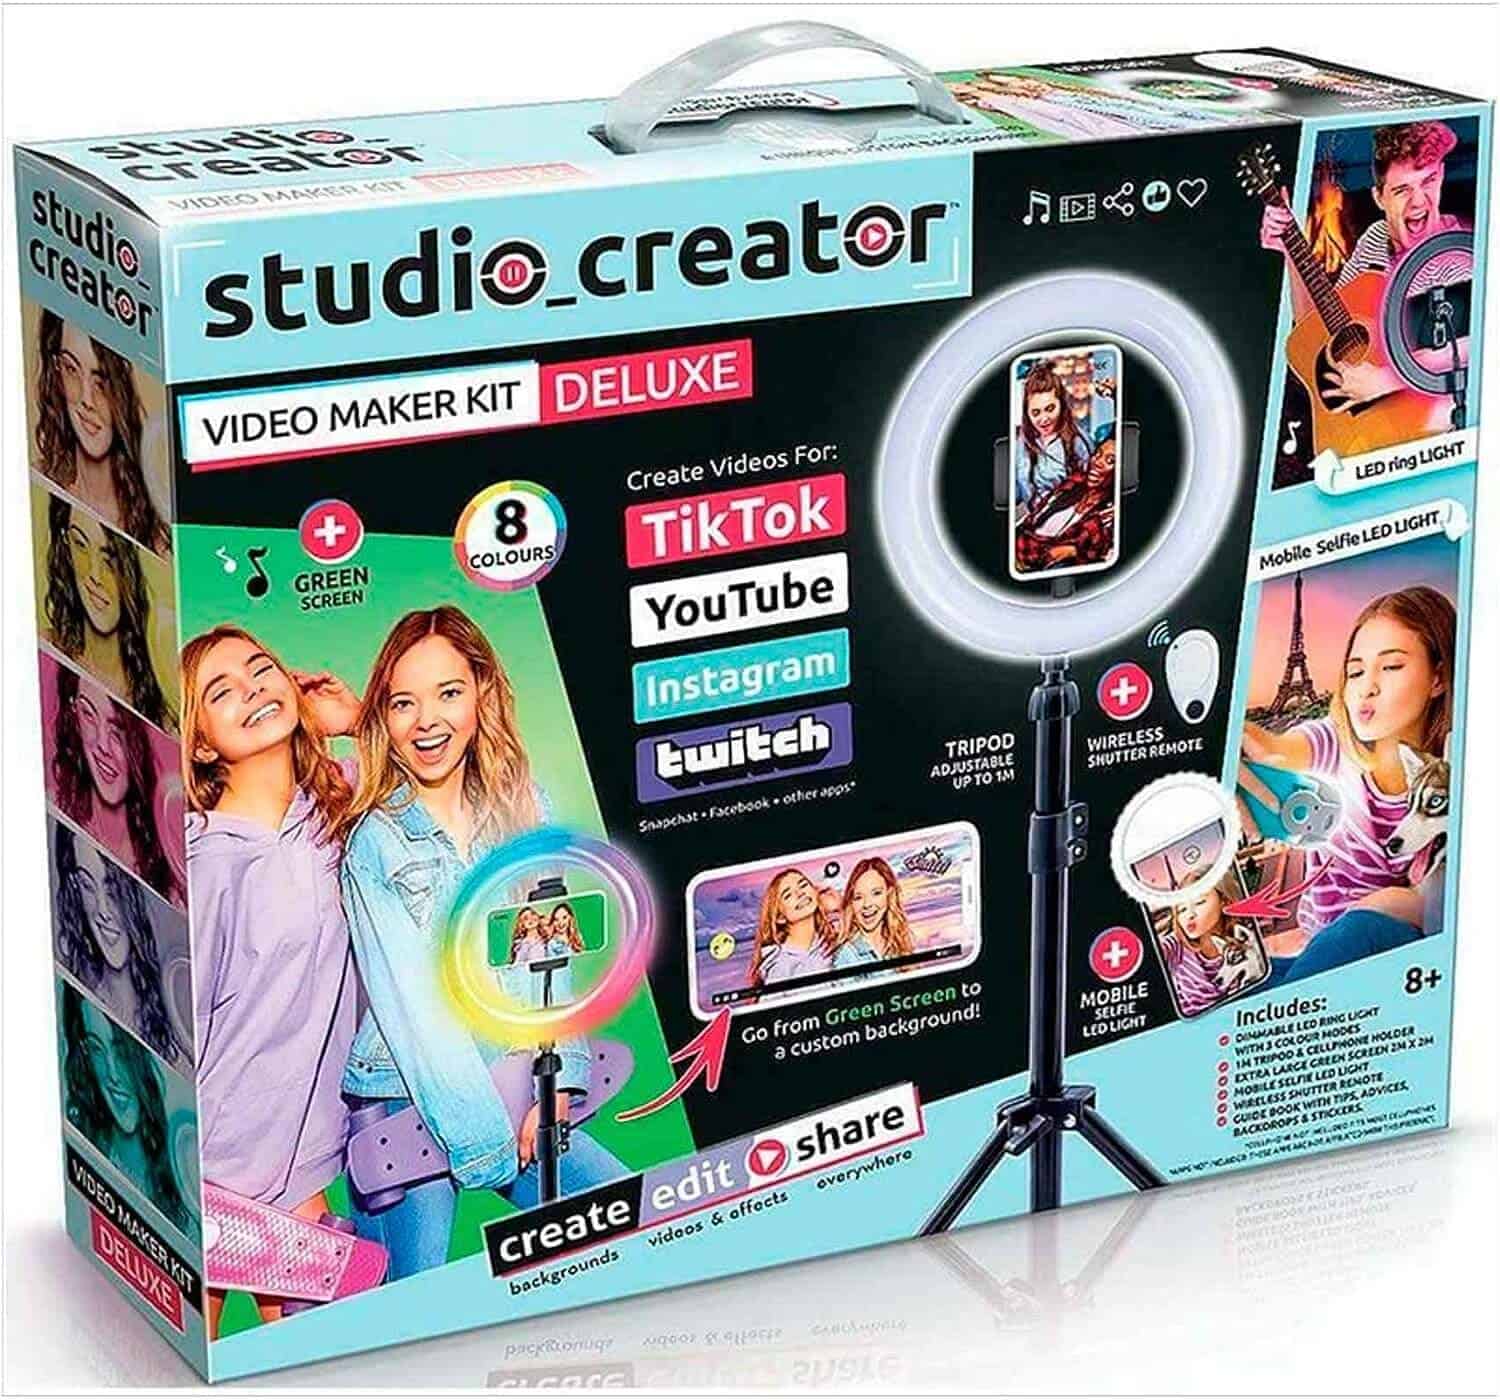 christmas present ideas: Video Maker Kit Deluxe